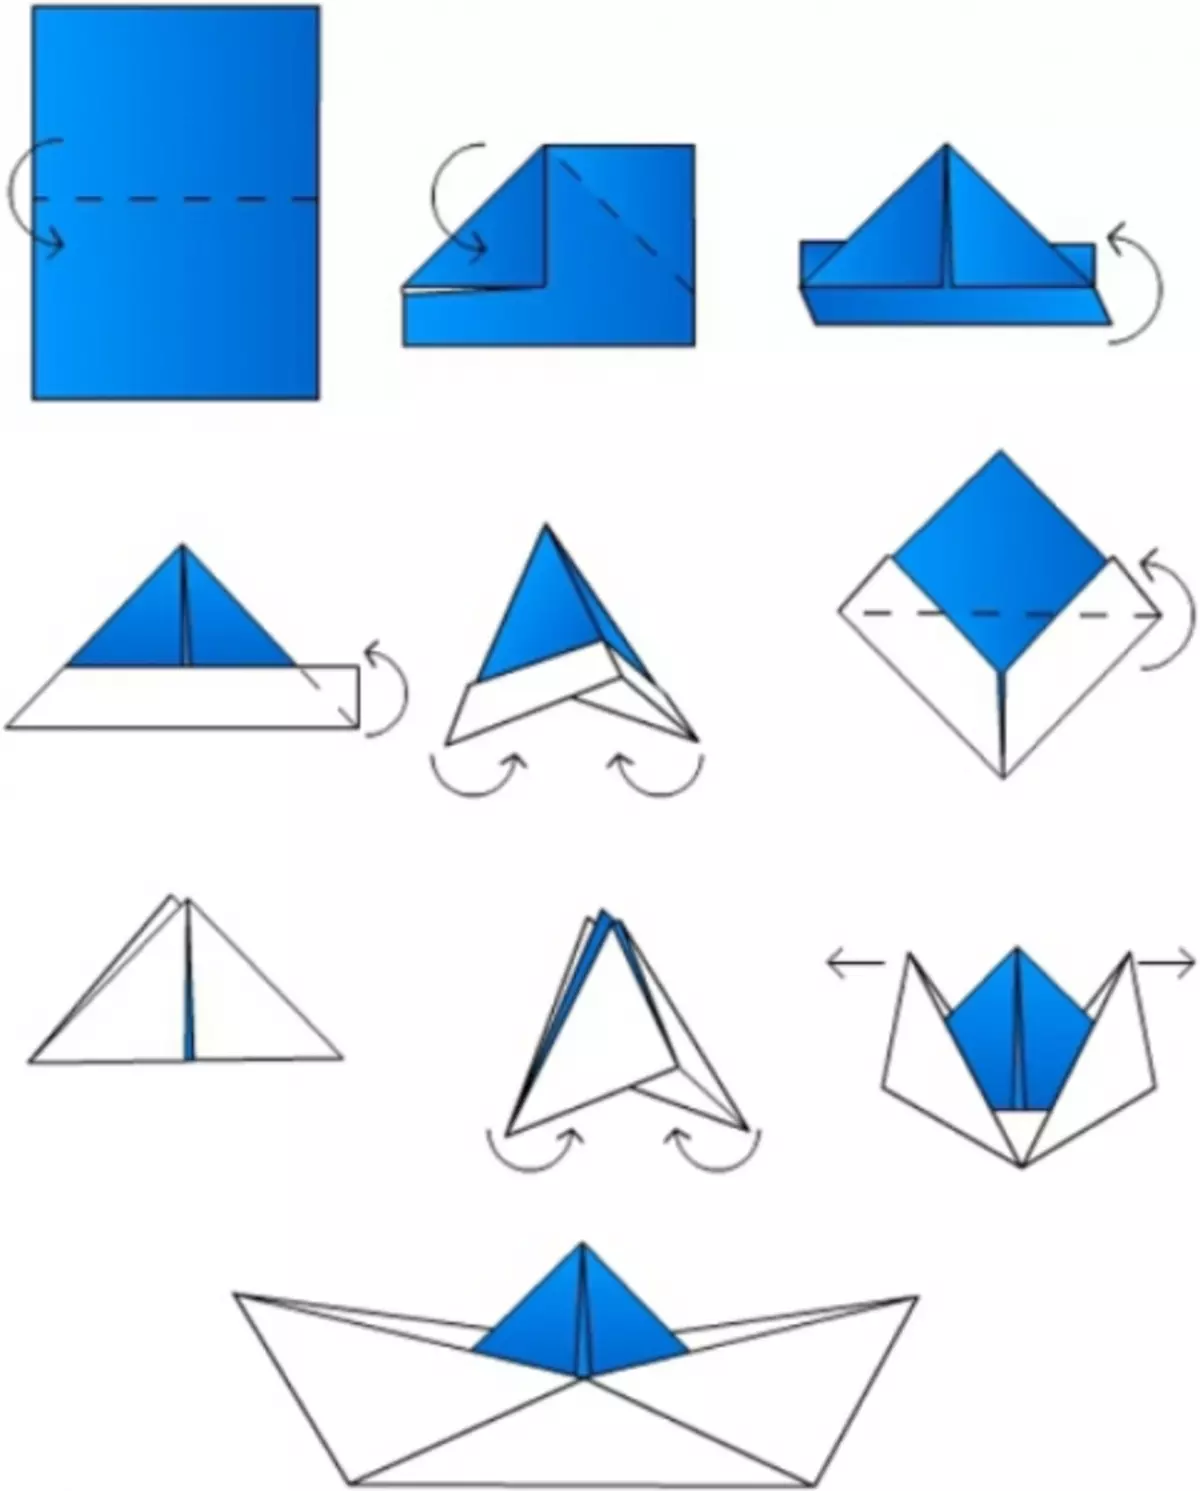 Kako napraviti origami papir: brod, zrakoplov i spremnik s videom